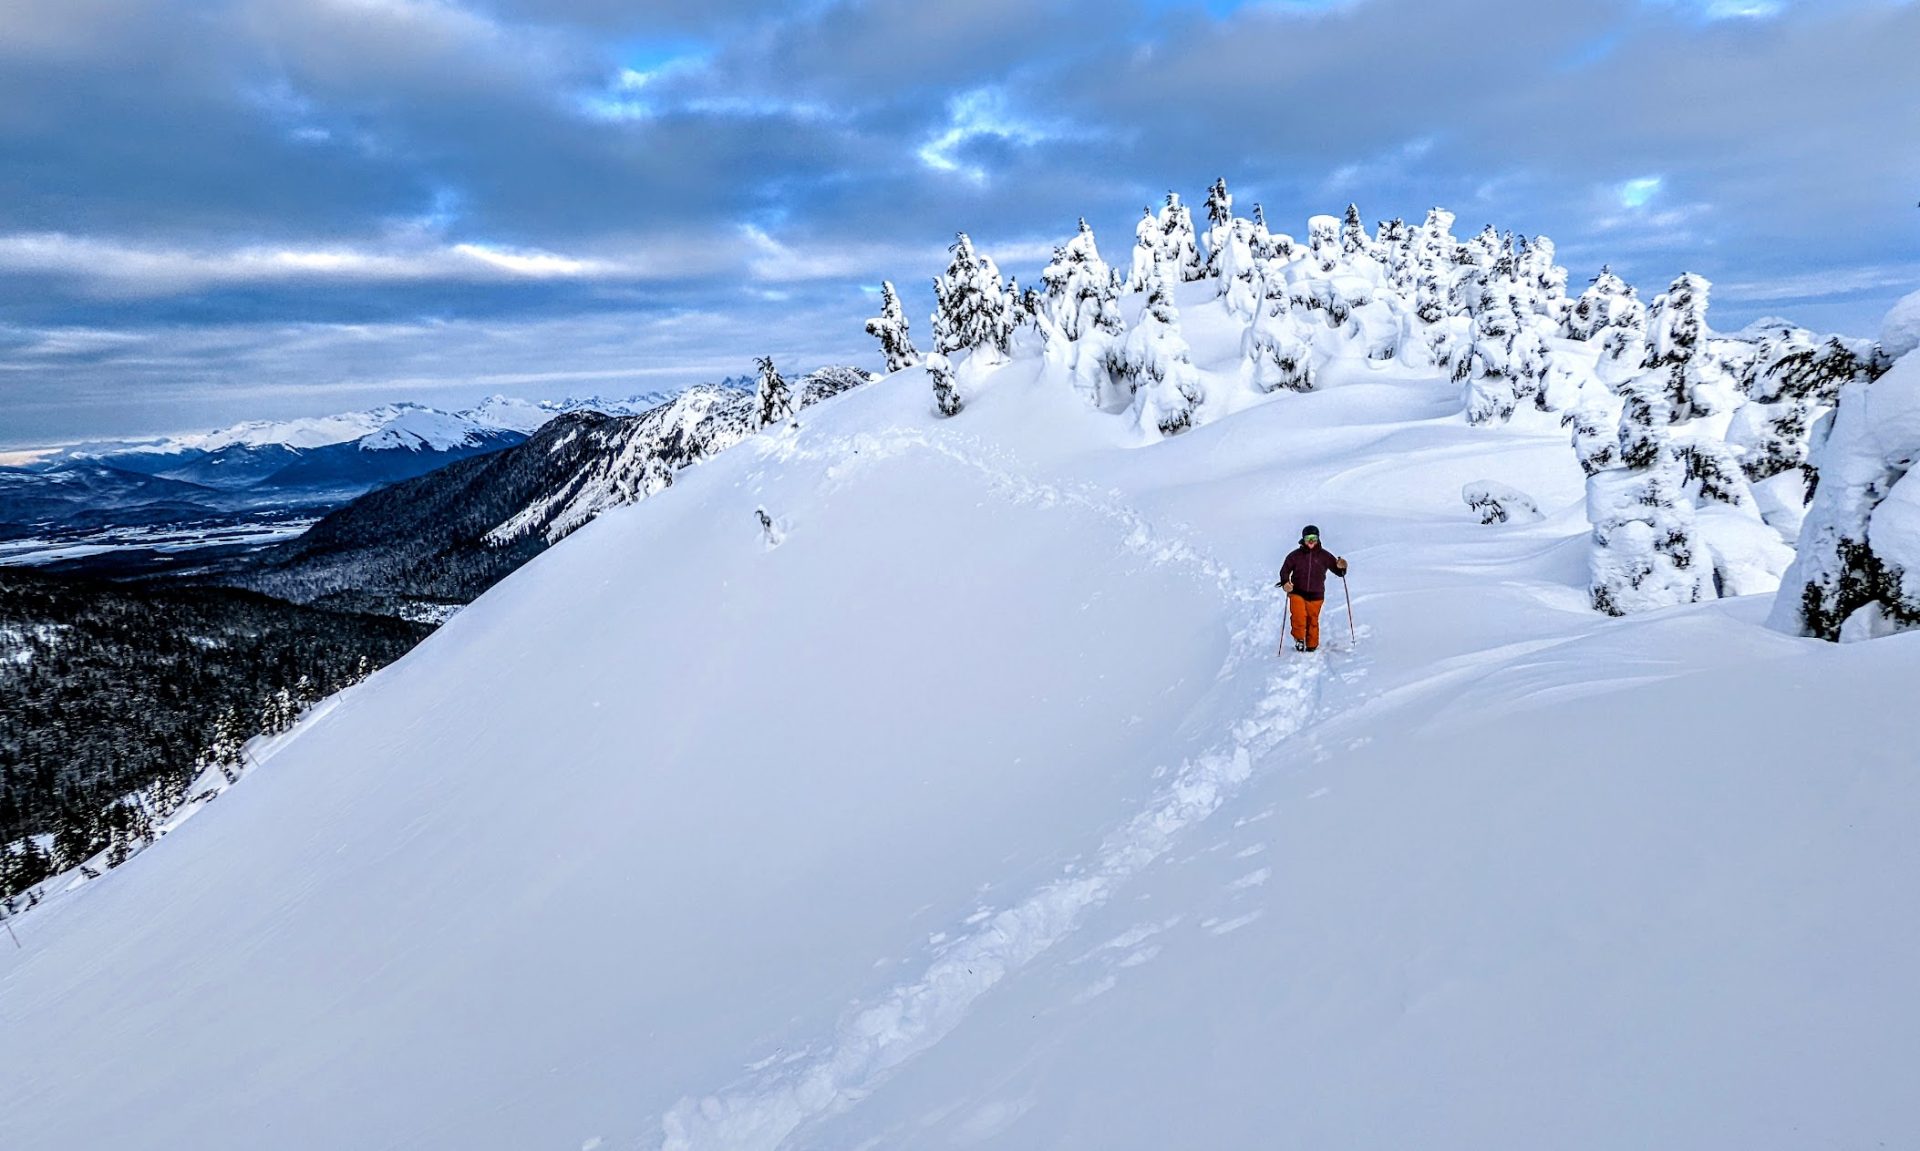 skiing a ridge in alaska